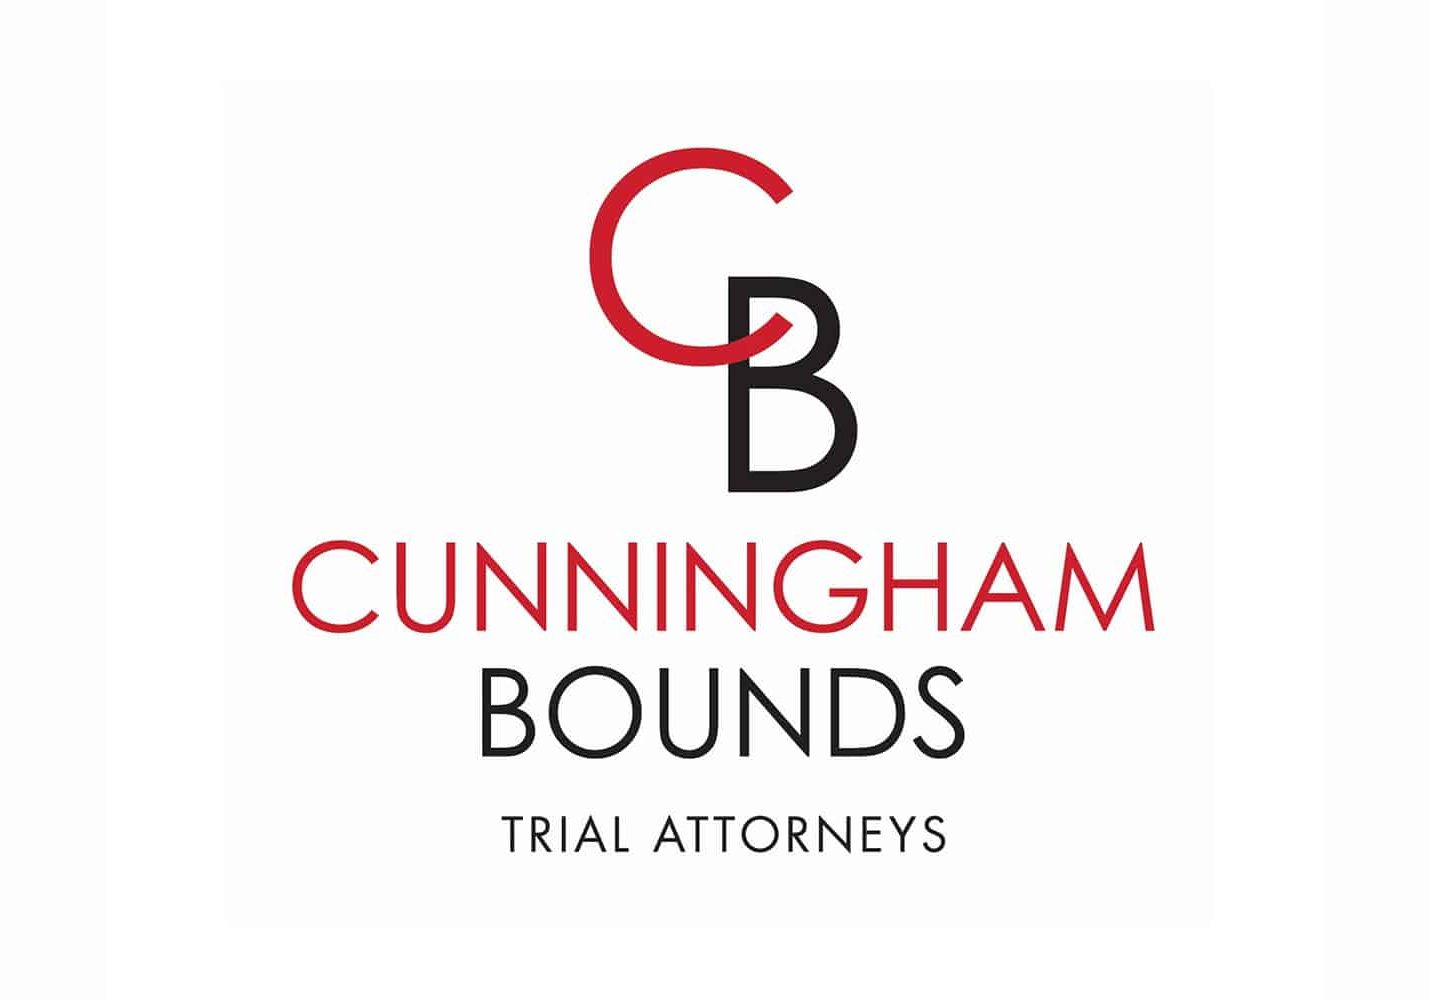 Cunningham Bounds Announces $5-Million Settlement